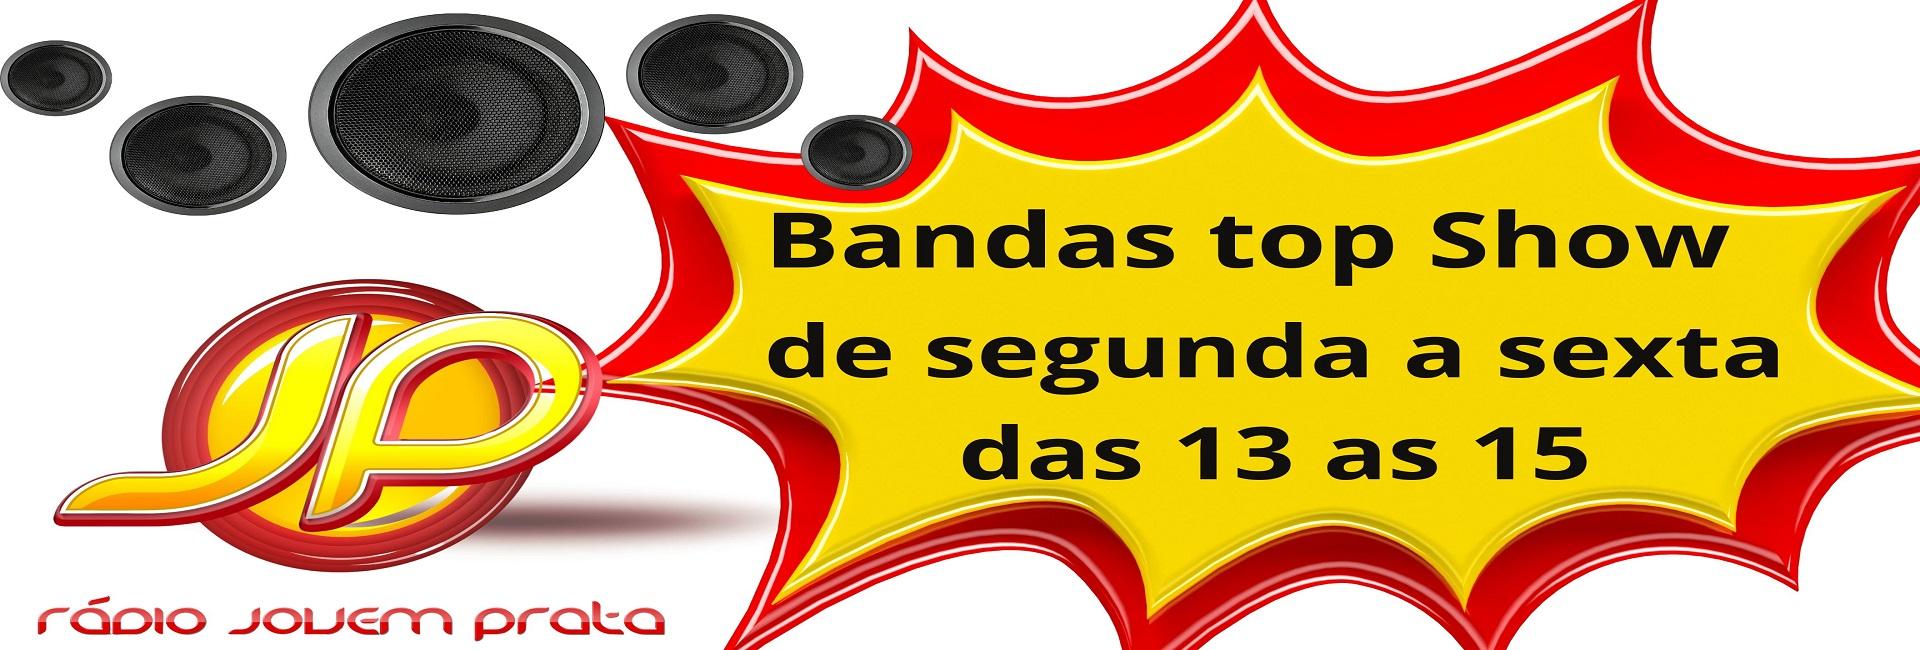 Bandas Top Show